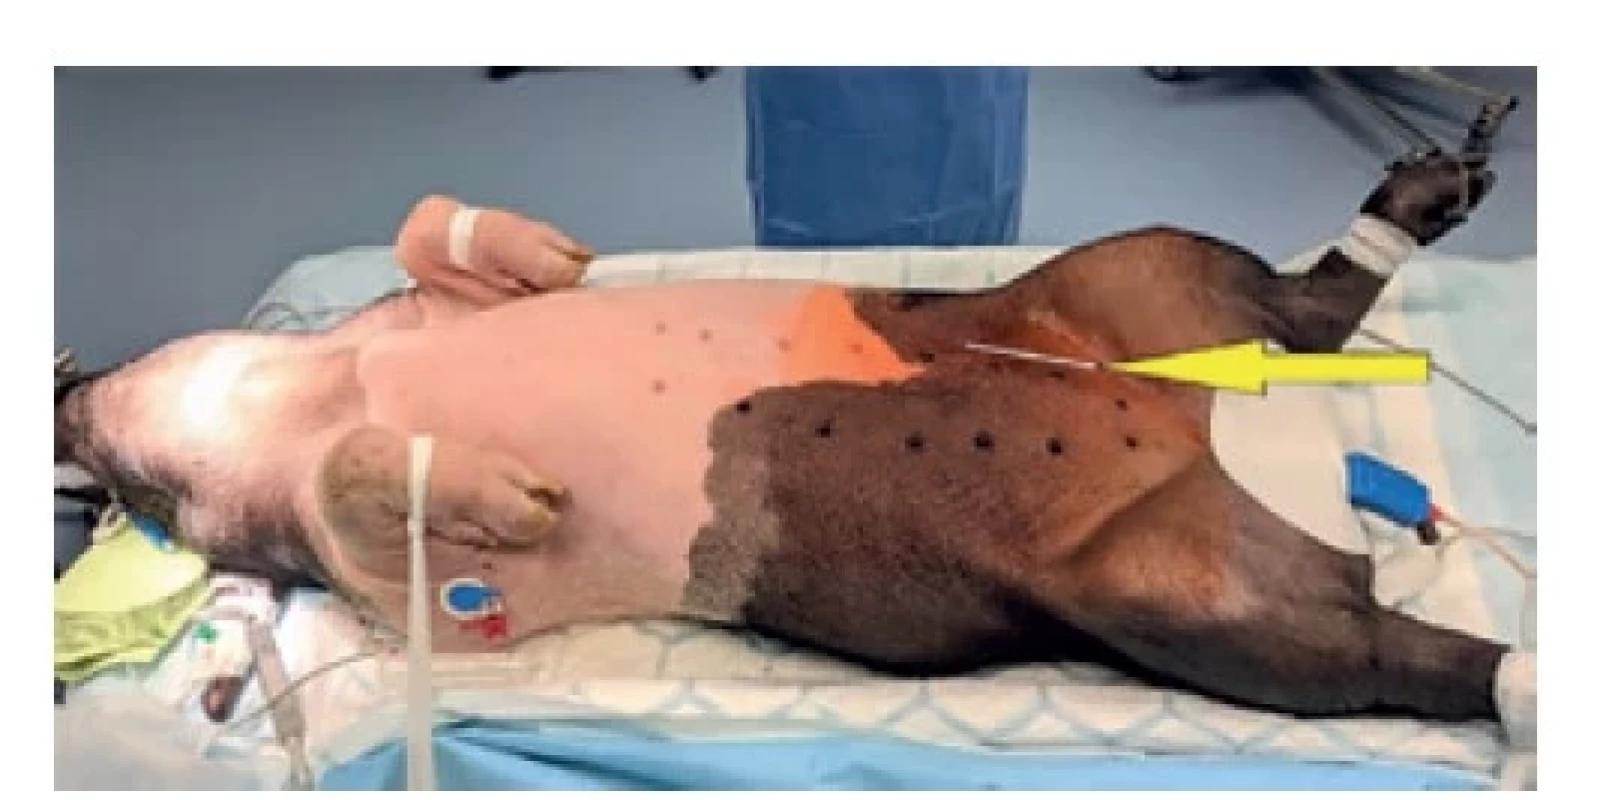 Zvíře v celkové anestezii, pozice řezu<br>
Fig. 1: Animal in general anaesthesia; the incision location